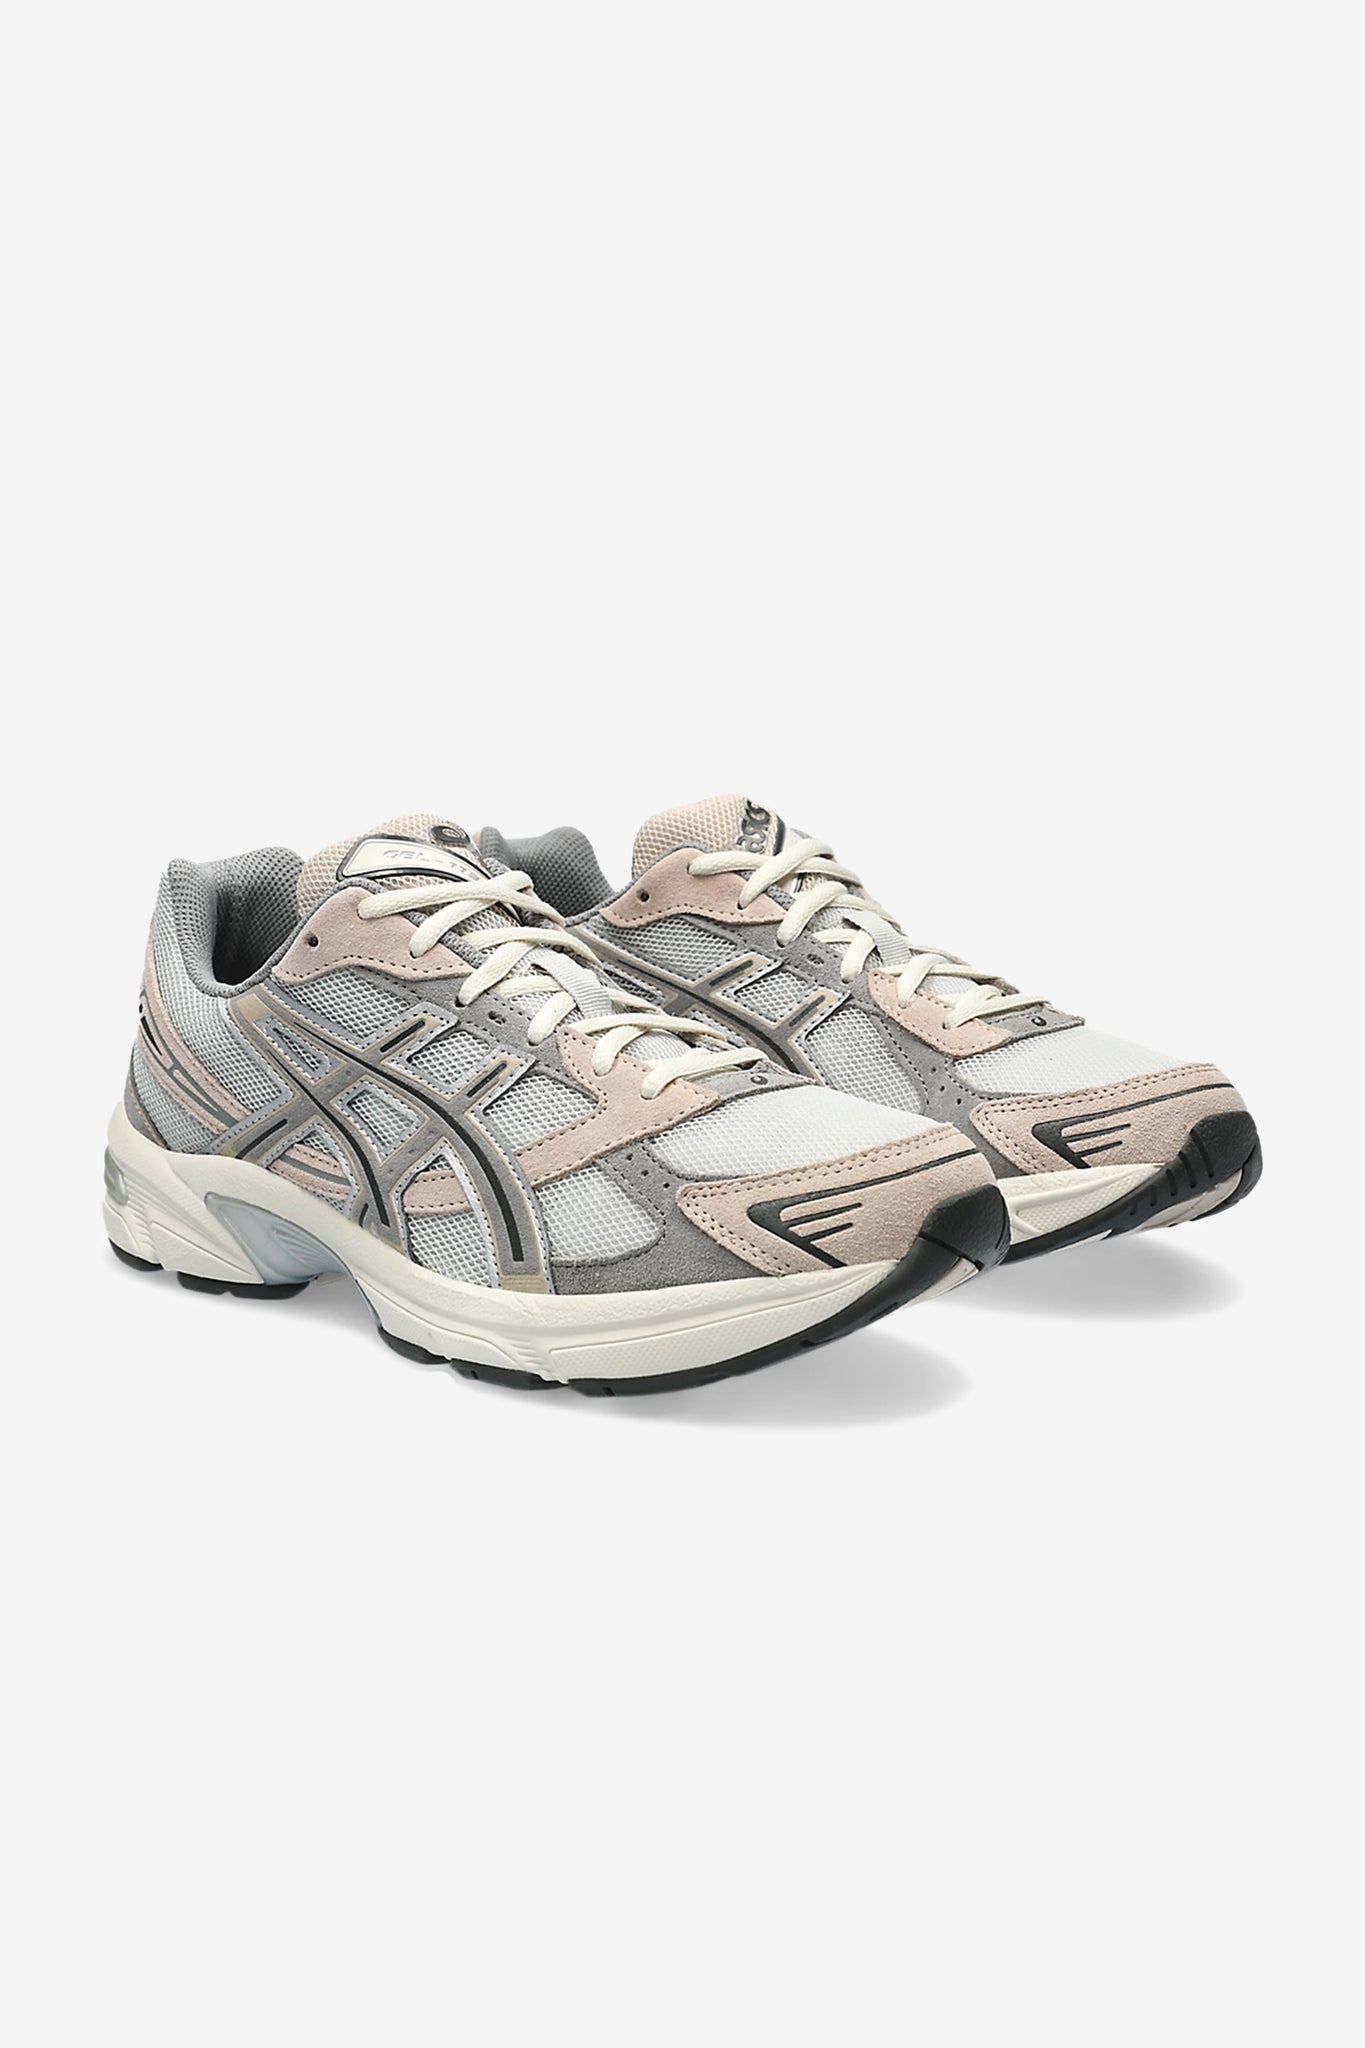 ASICS Men's Gel-1130 Sneaker in Oyster Grey/Clay Grey